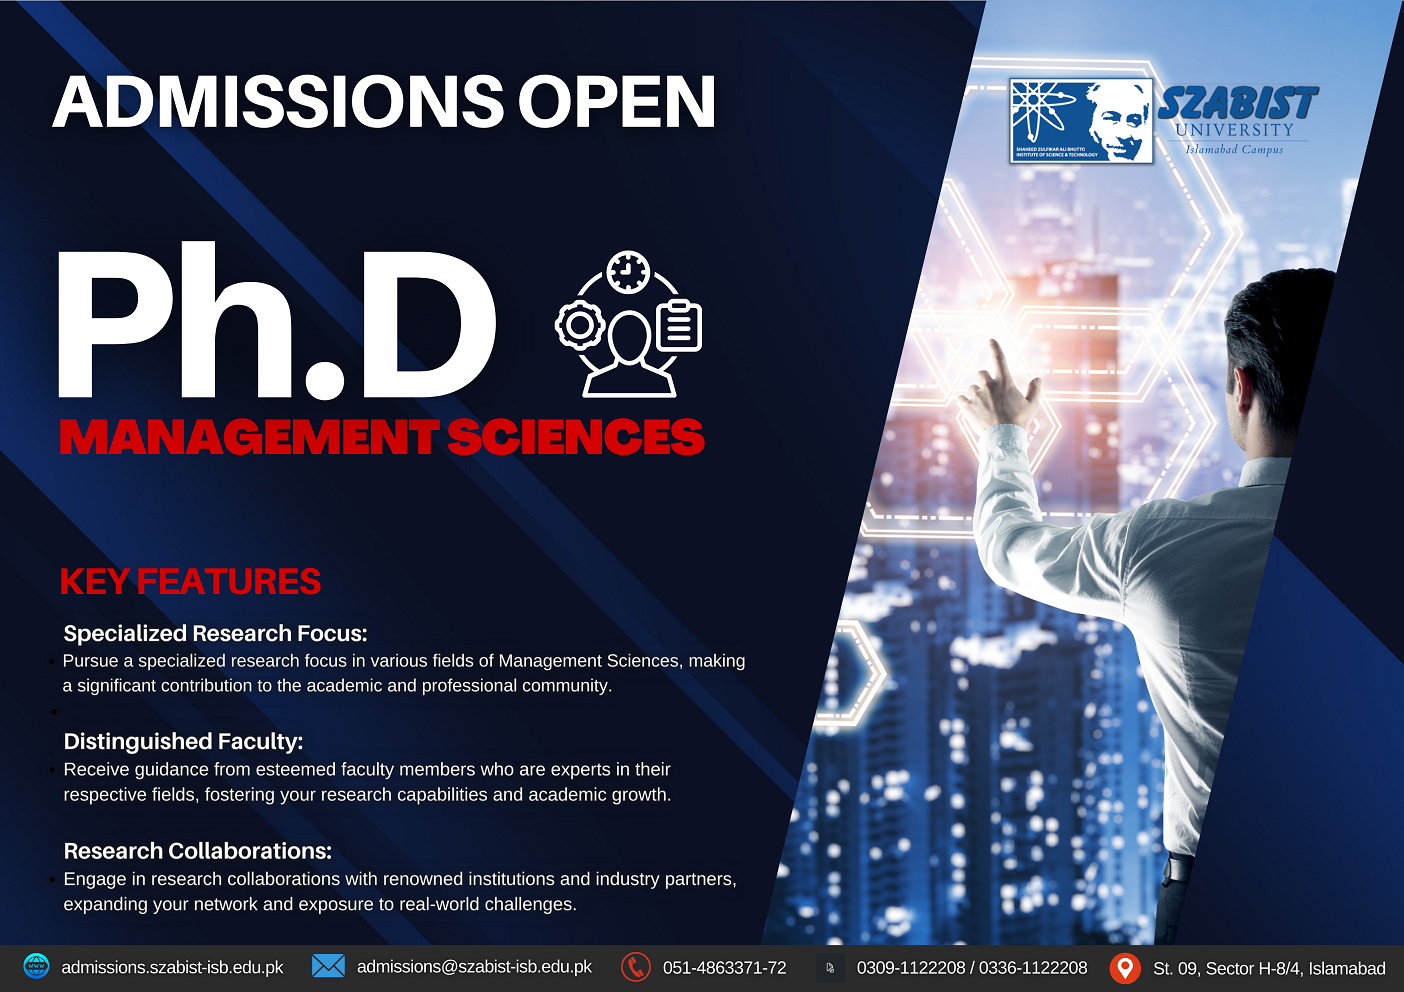 phd management sciences